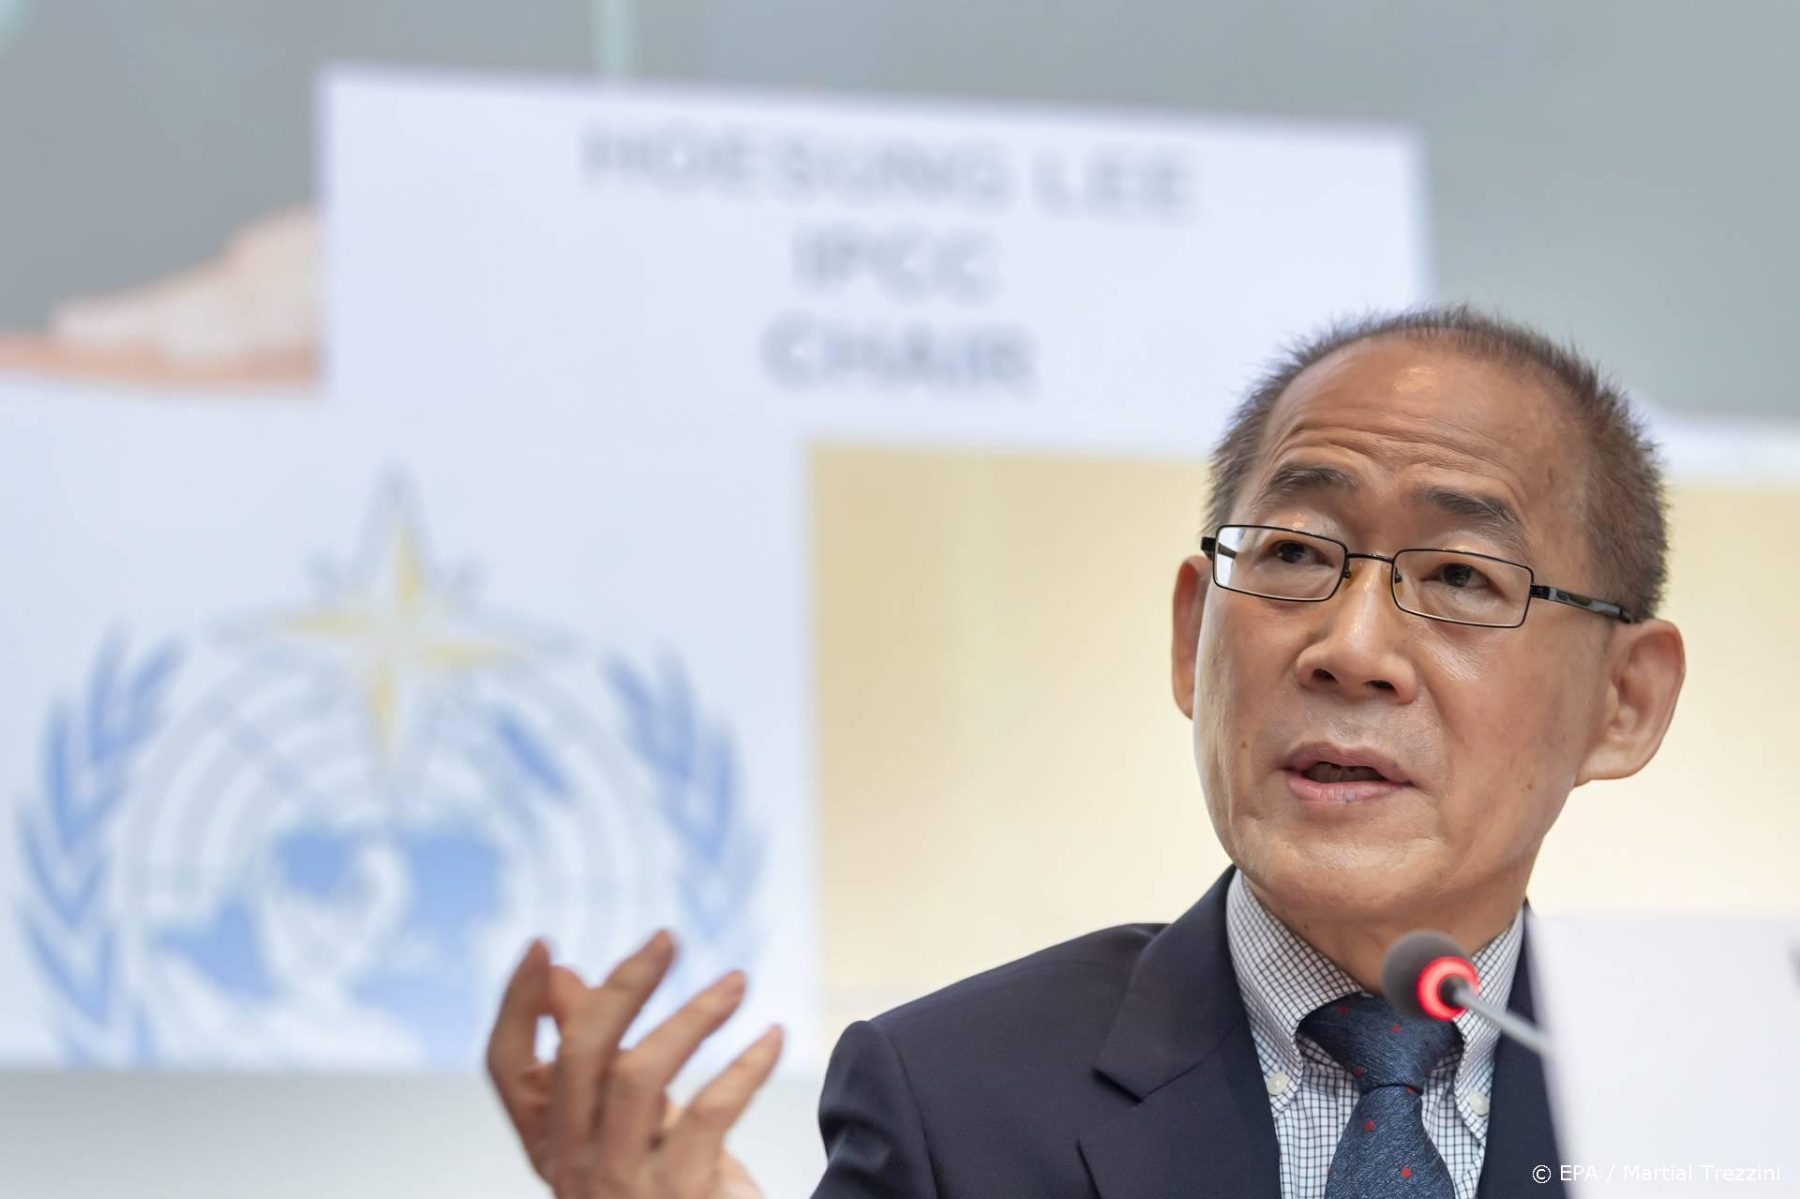 IPCC-klimaatrapport is volgens voorzitter Lee 'ernstige waarschuwing'